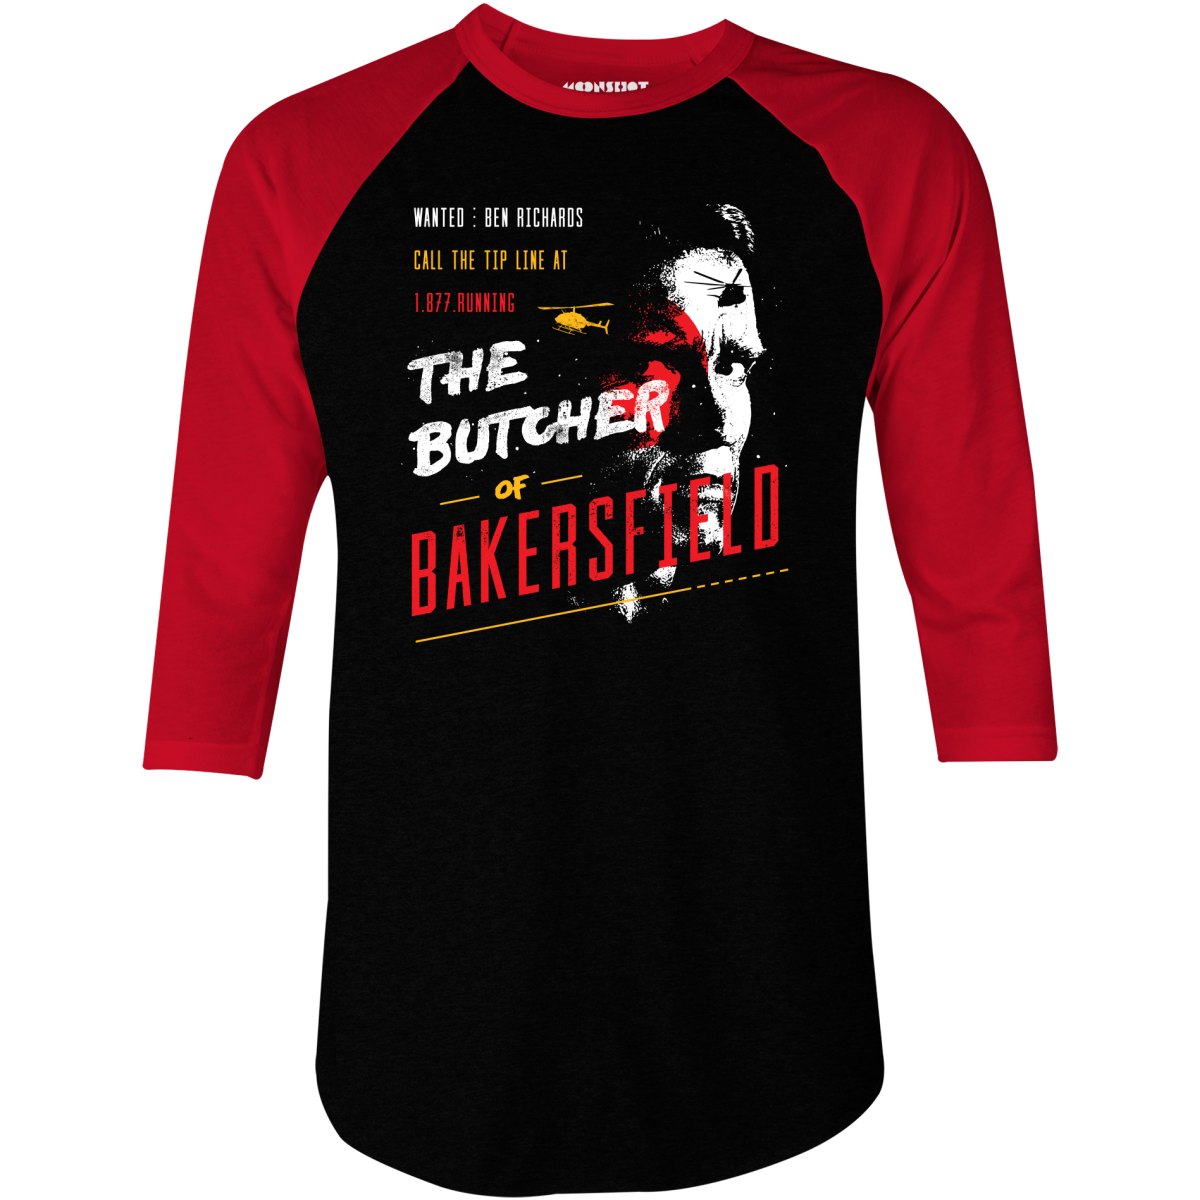 Ben Richards - Butcher of Bakersfield - 3/4 Sleeve Raglan T-Shirt